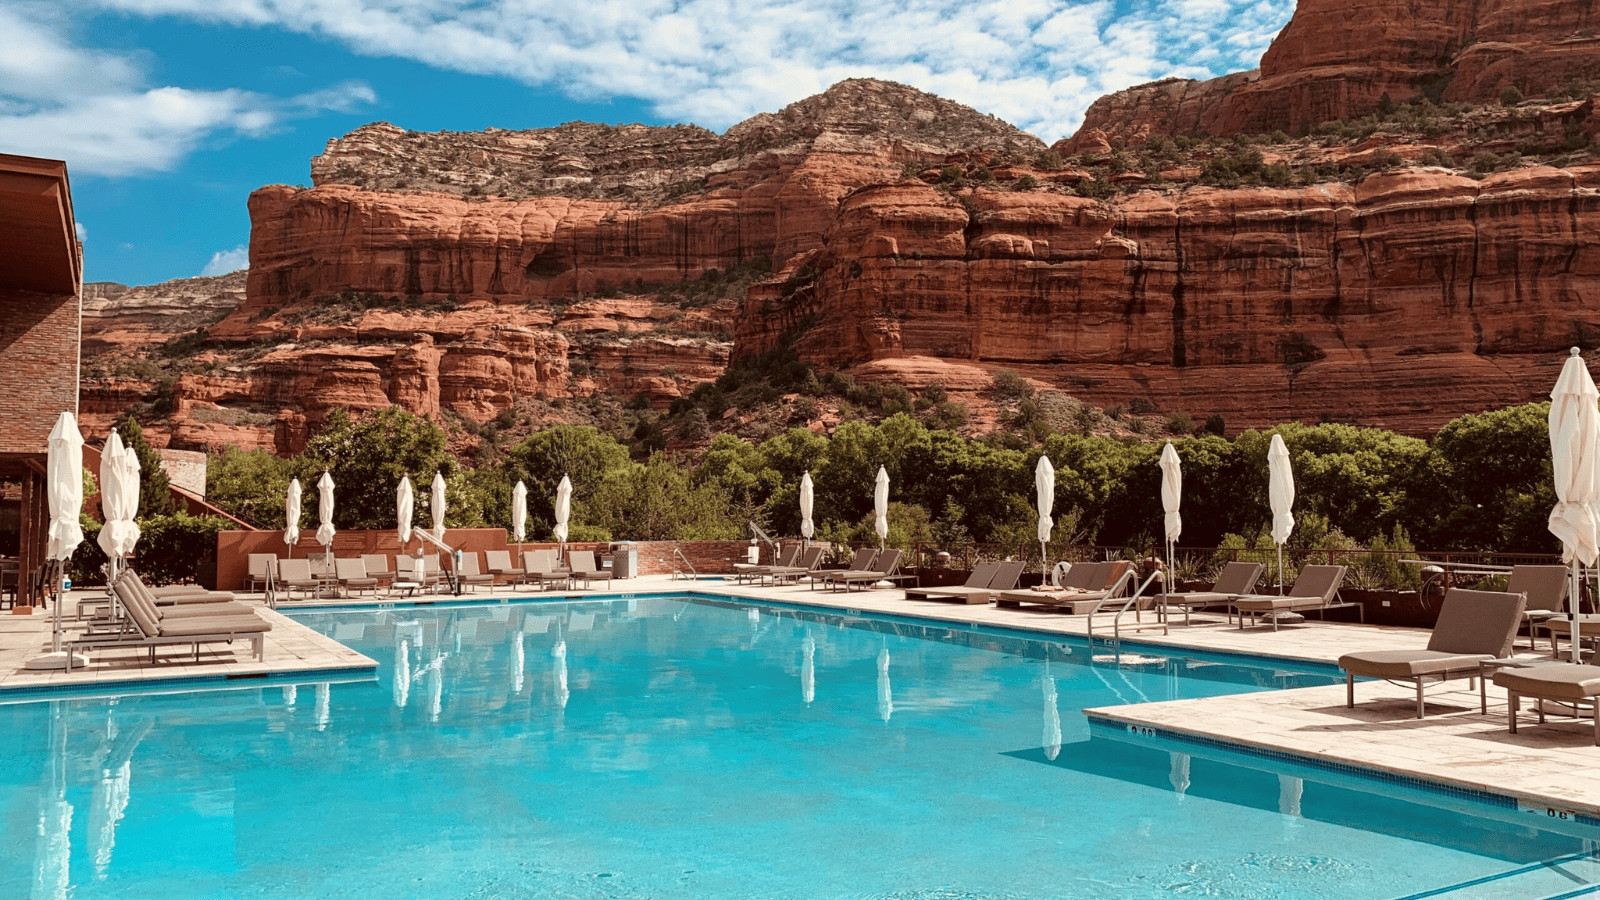 Enchantment Resort, Arizona